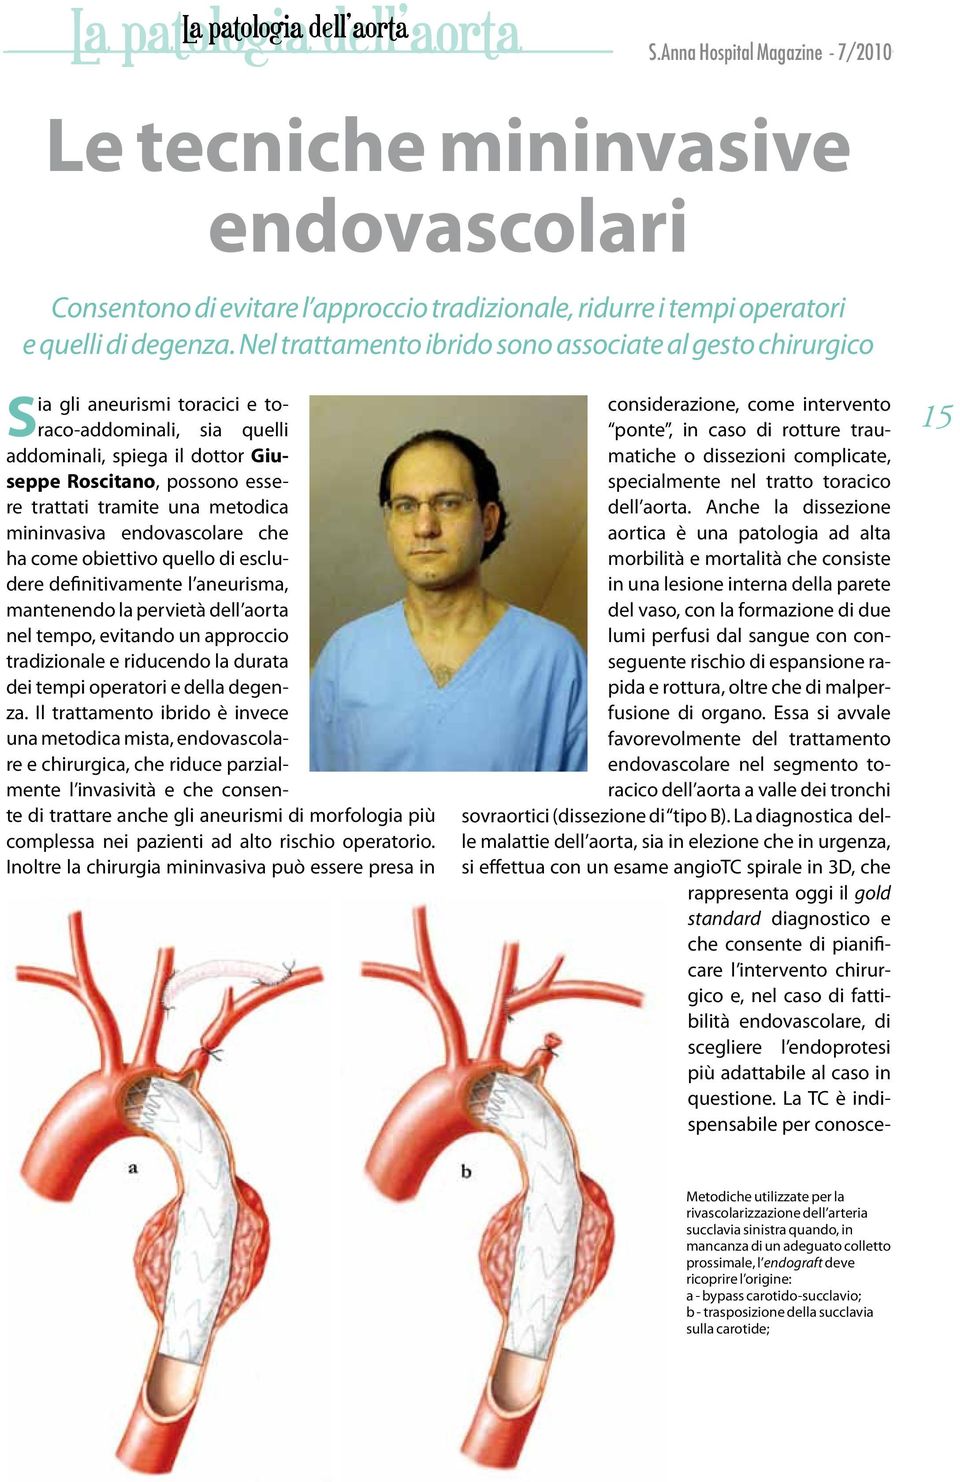 una metodica mininvasiva endovascolare che ha come obiettivo quello di escludere definitivamente l aneurisma, mantenendo la pervietà dell aorta nel tempo, evitando un approccio tradizionale e